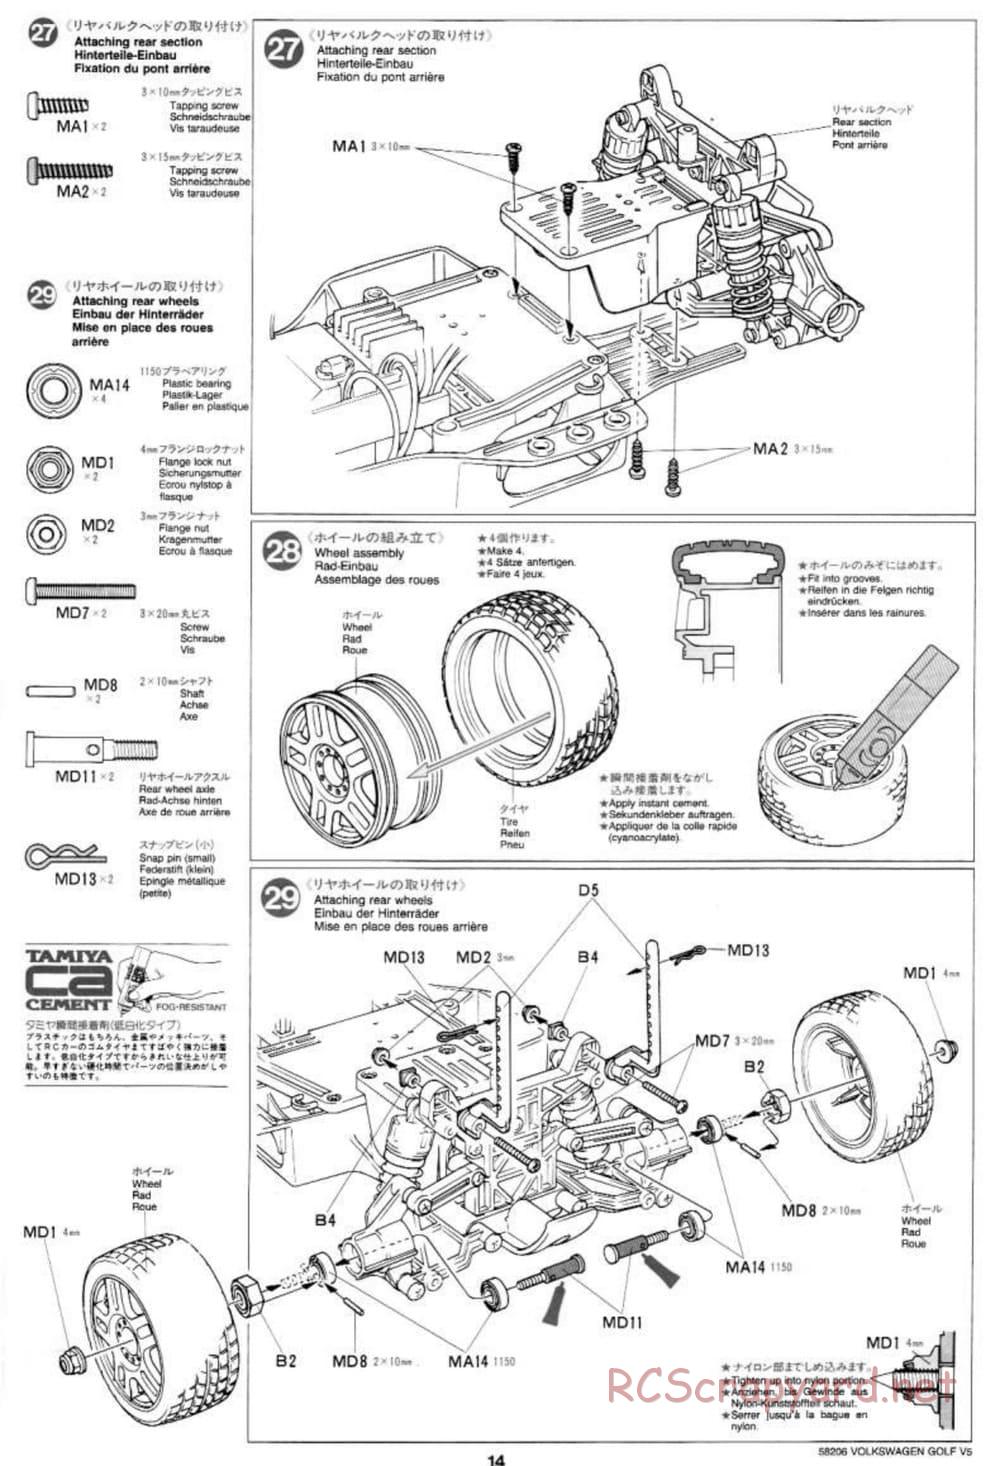 Tamiya - Volkswagen Golf V5 - FF-01 Chassis - Manual - Page 14